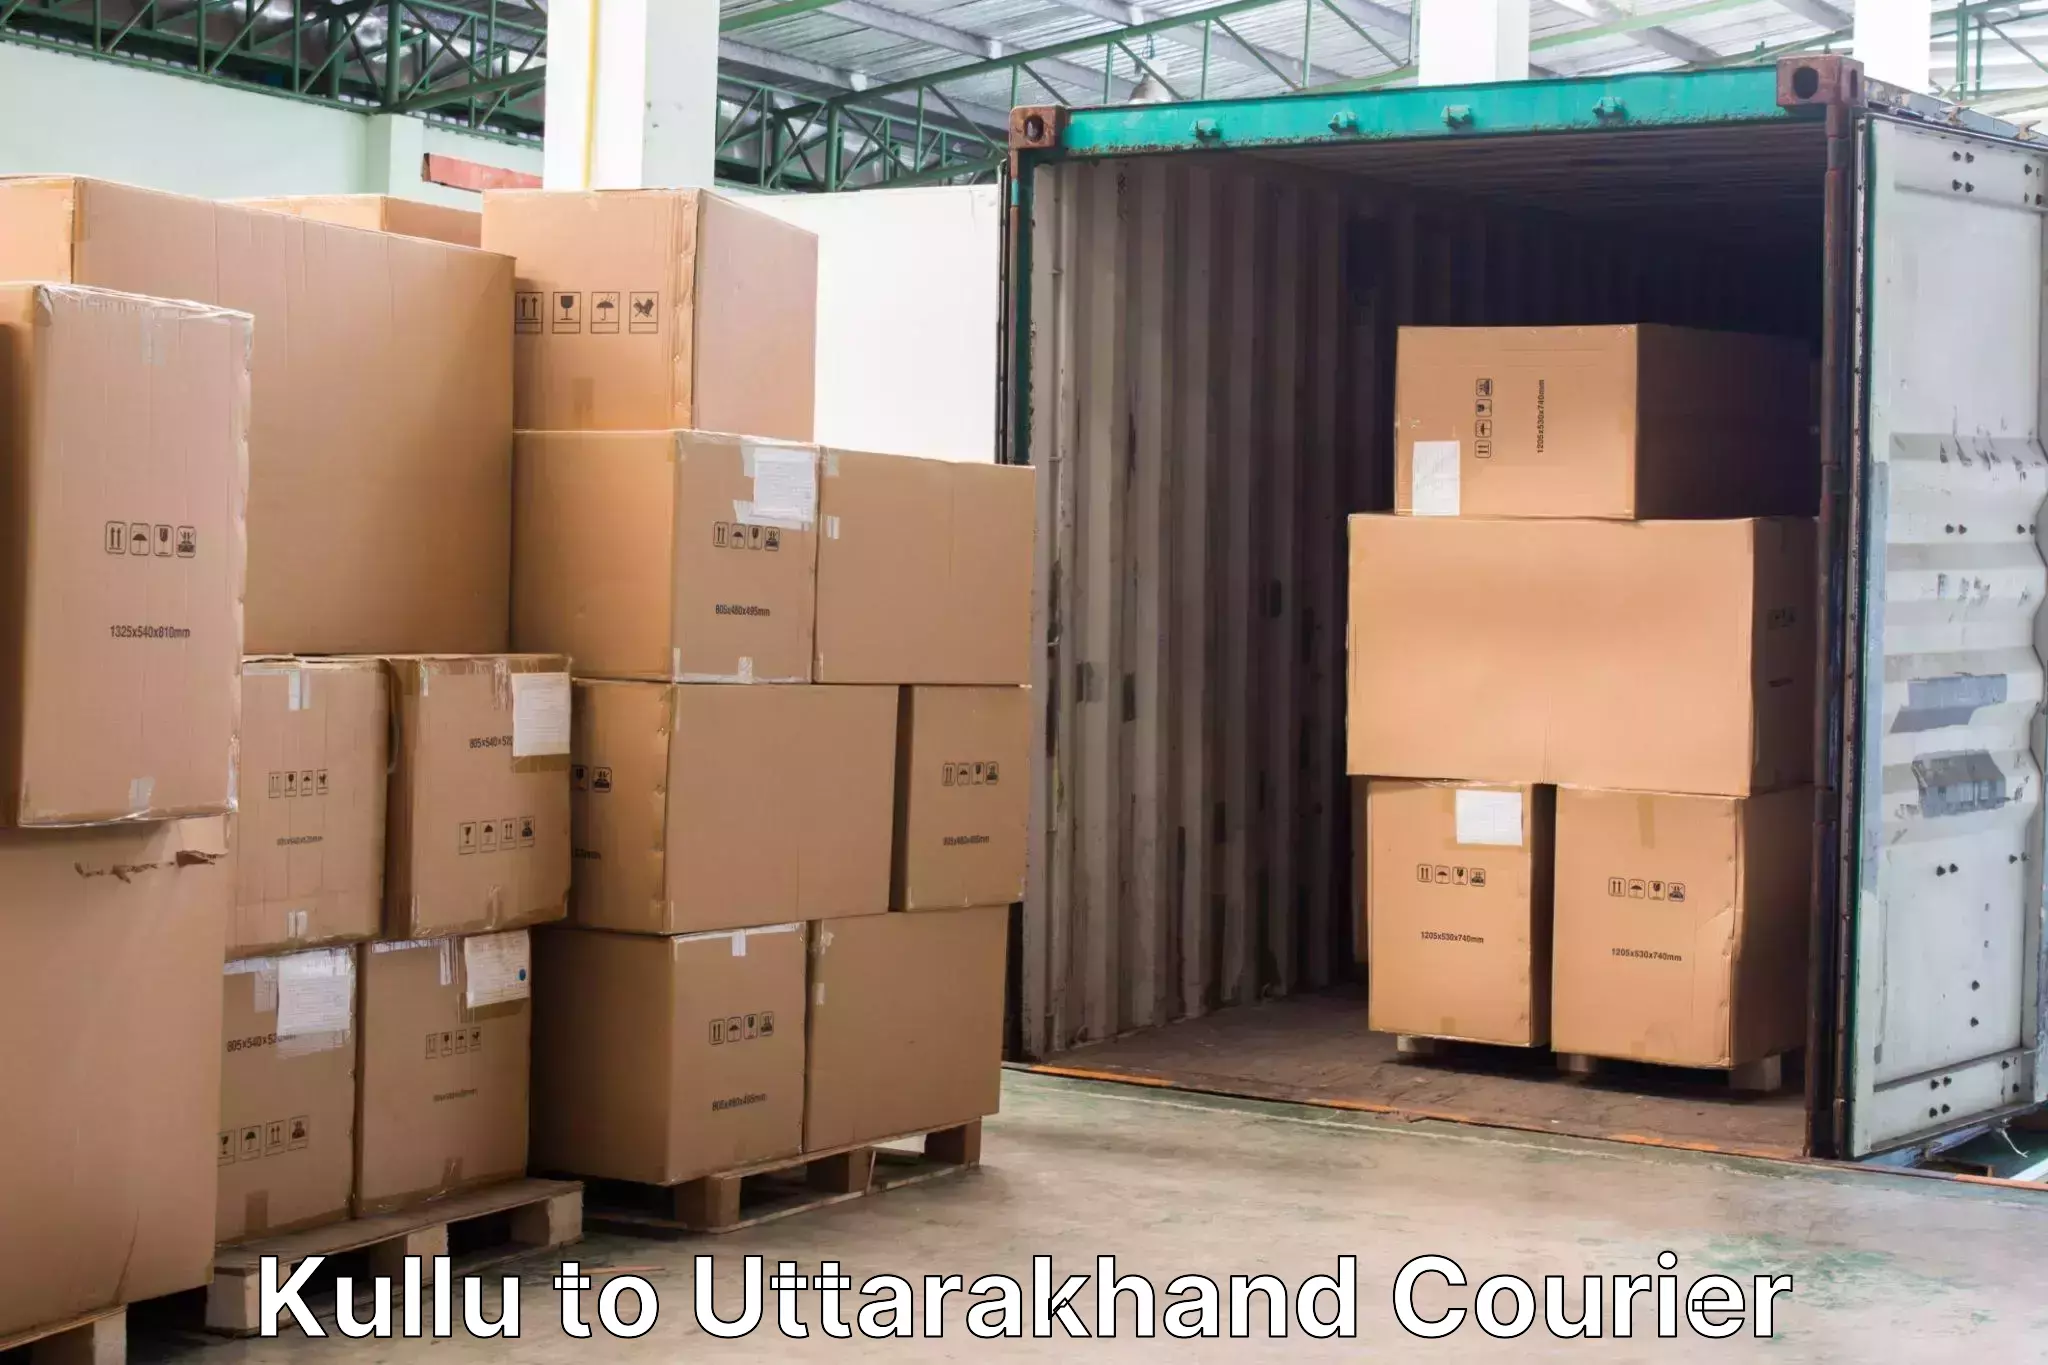 Luggage delivery system Kullu to Uttarkashi